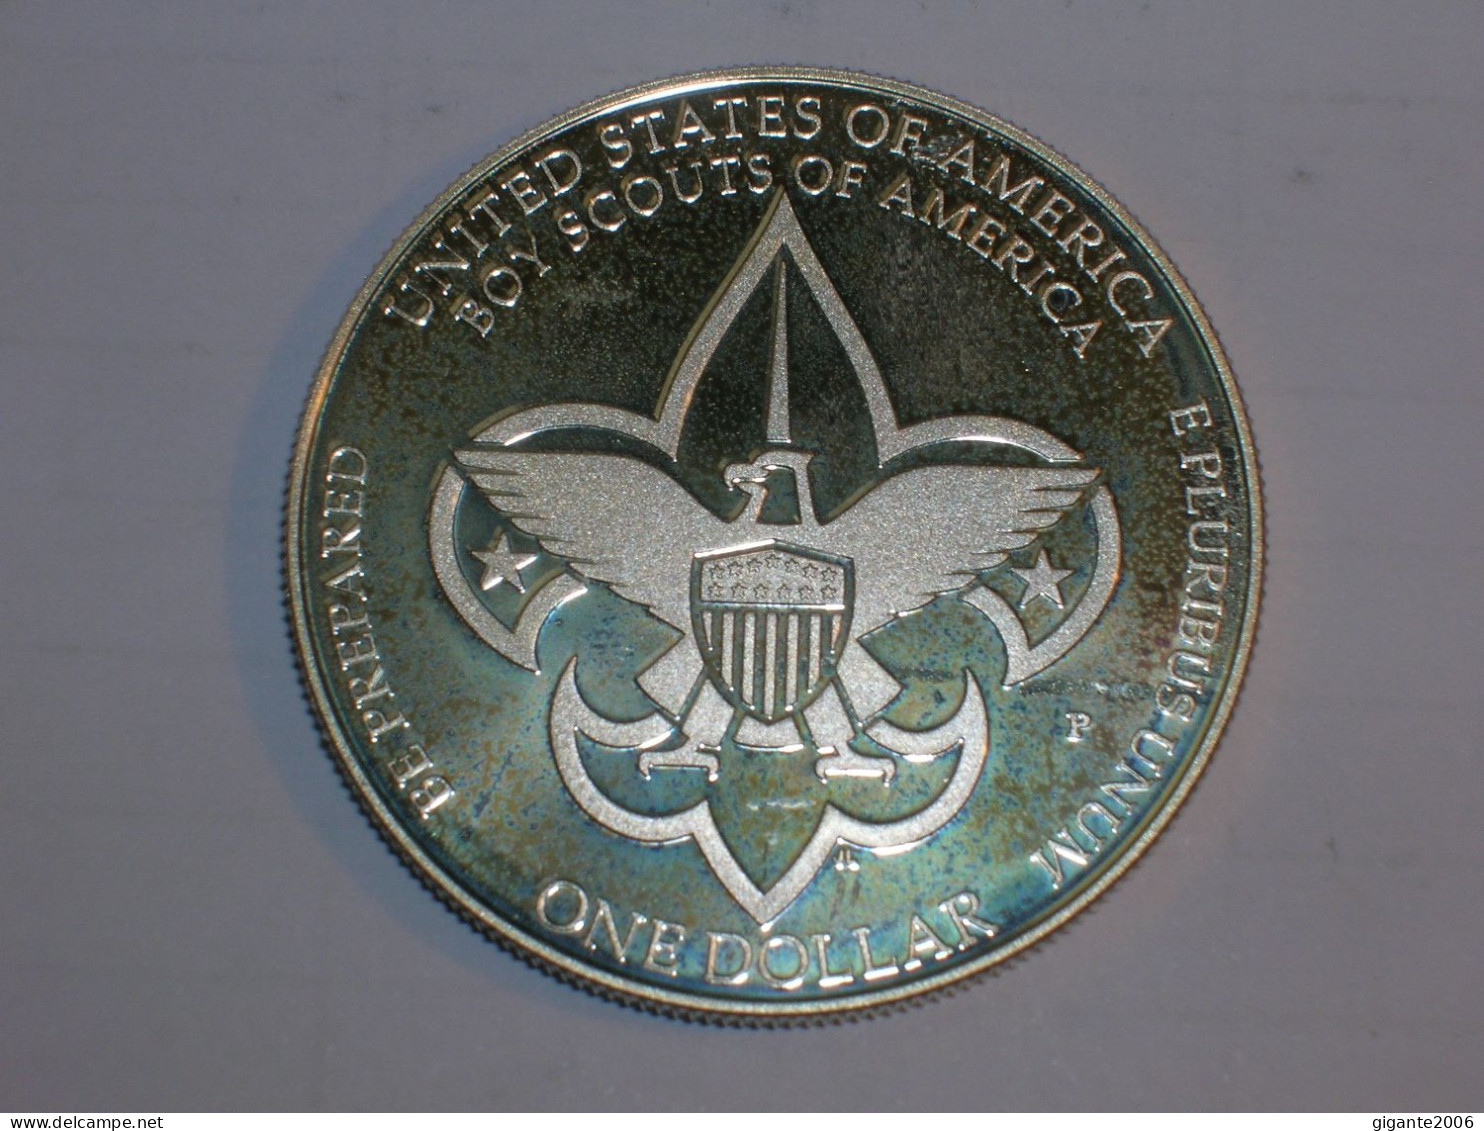 Estados Unidos/USA 1 Dolar Conmemorativo, 2010 P Proof, Boy Scouts(13967) - Gedenkmünzen